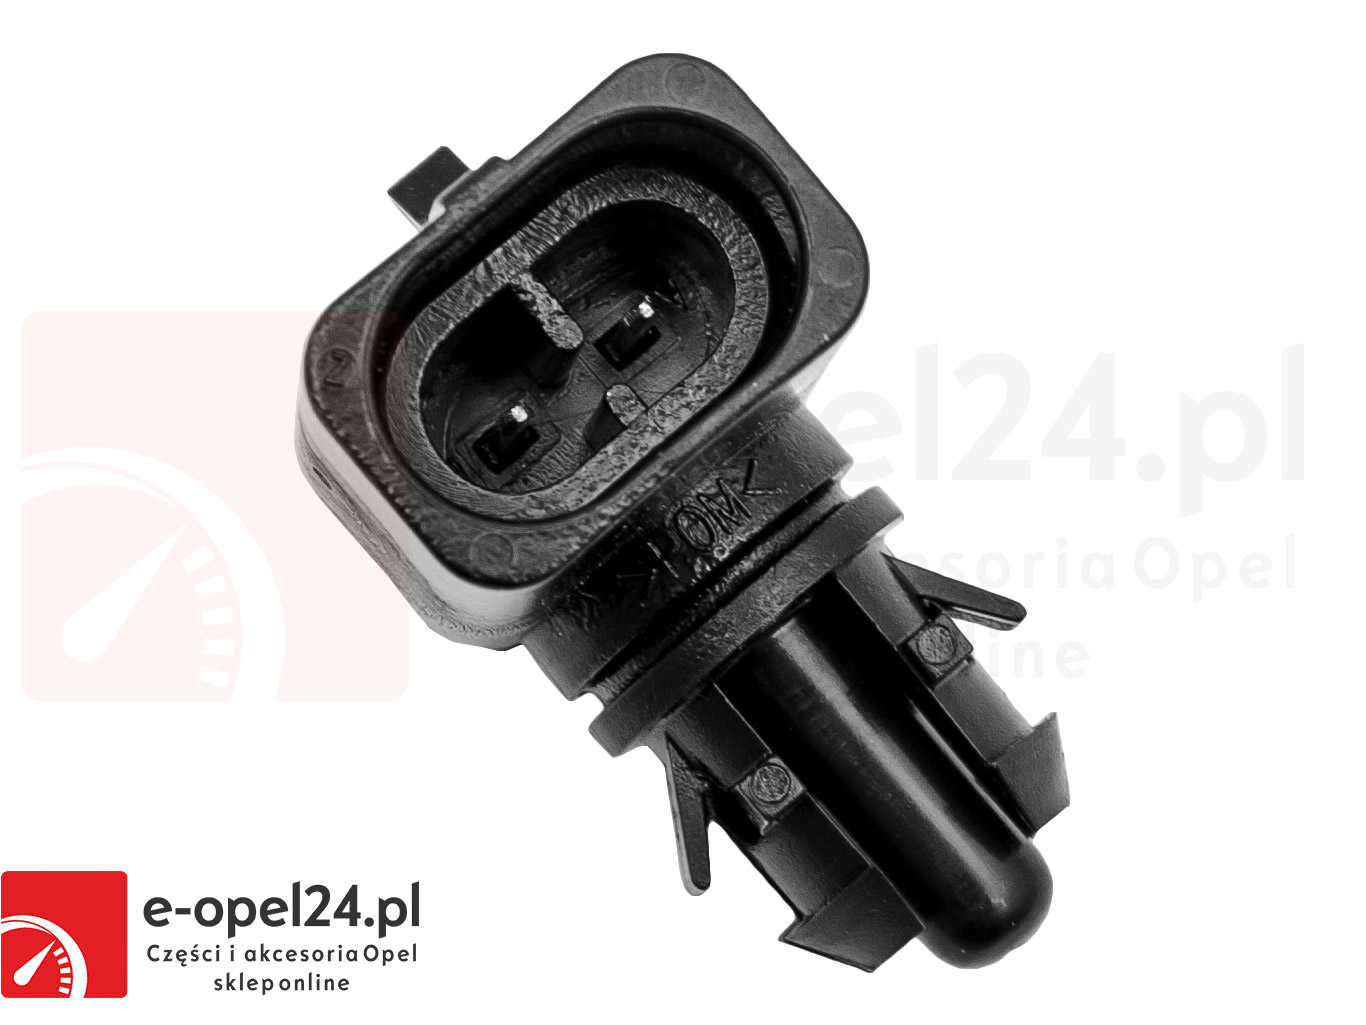 Czujnik Gm Temperatury Zewnętrznej - 123614 | E-Opel24.Pl